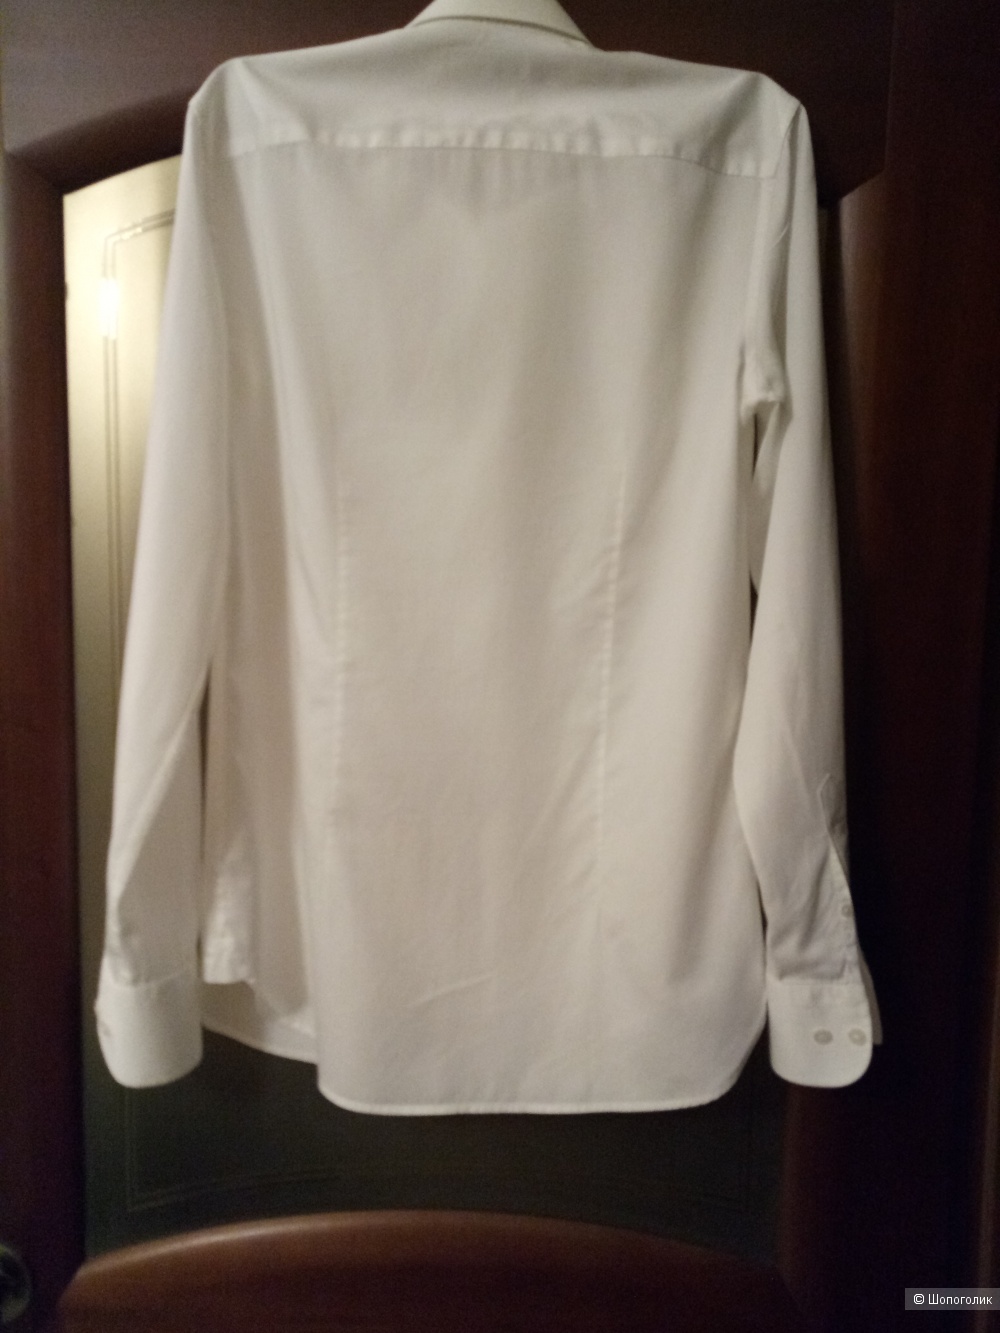 Рубашка ALBIONE, размер 46-50 рос